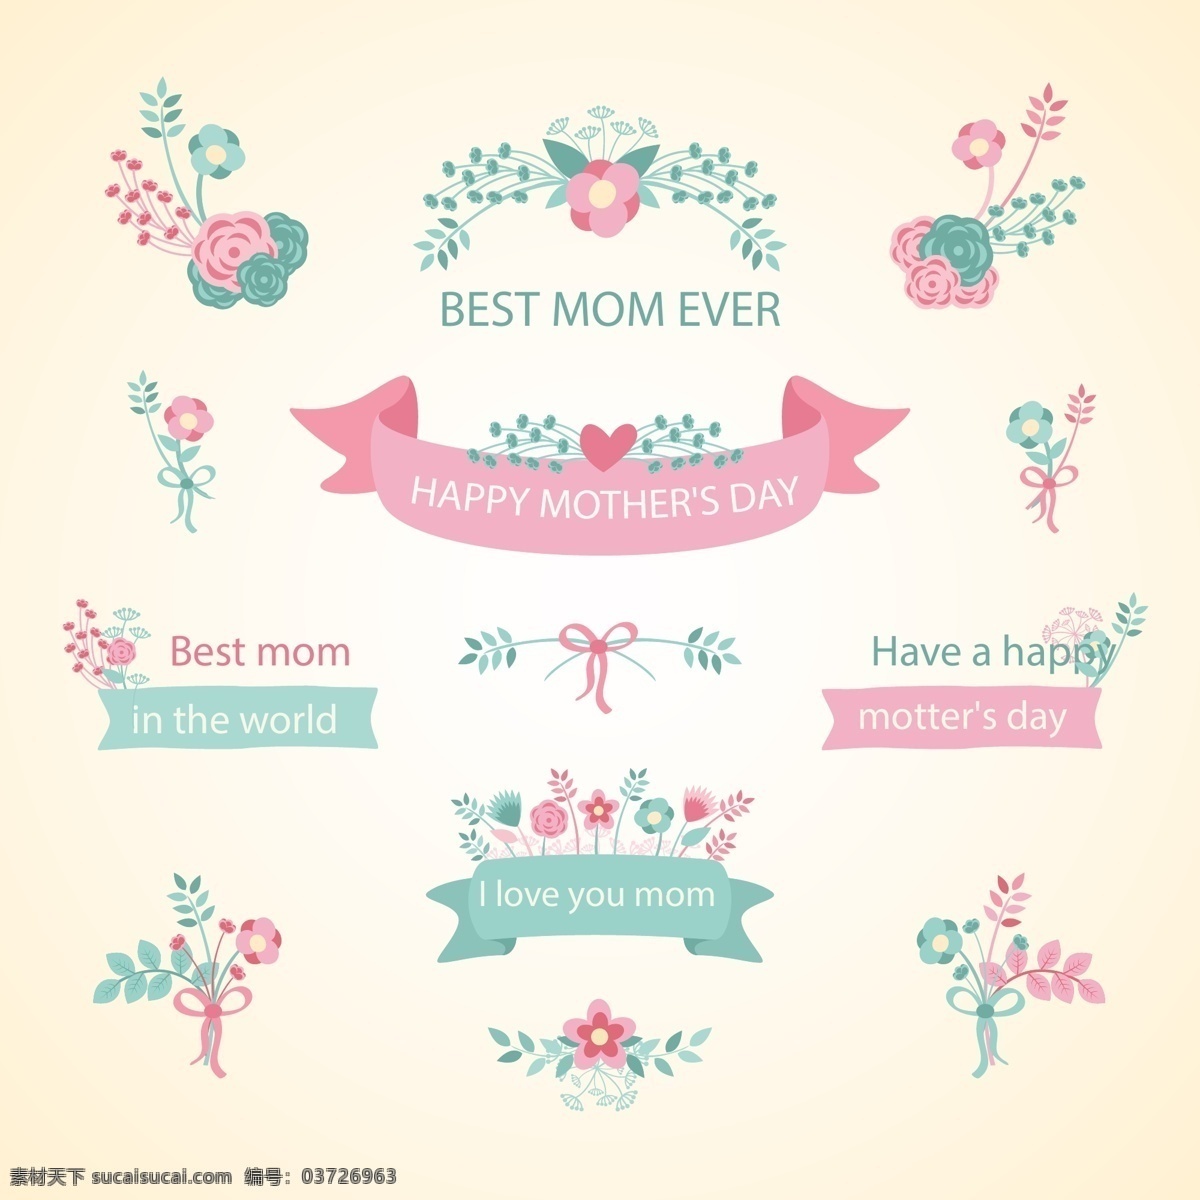 母亲节 矢量 花环 横条 英文 花草 粉红色 矢量素材 母亲节快乐 底纹边框 花边花纹